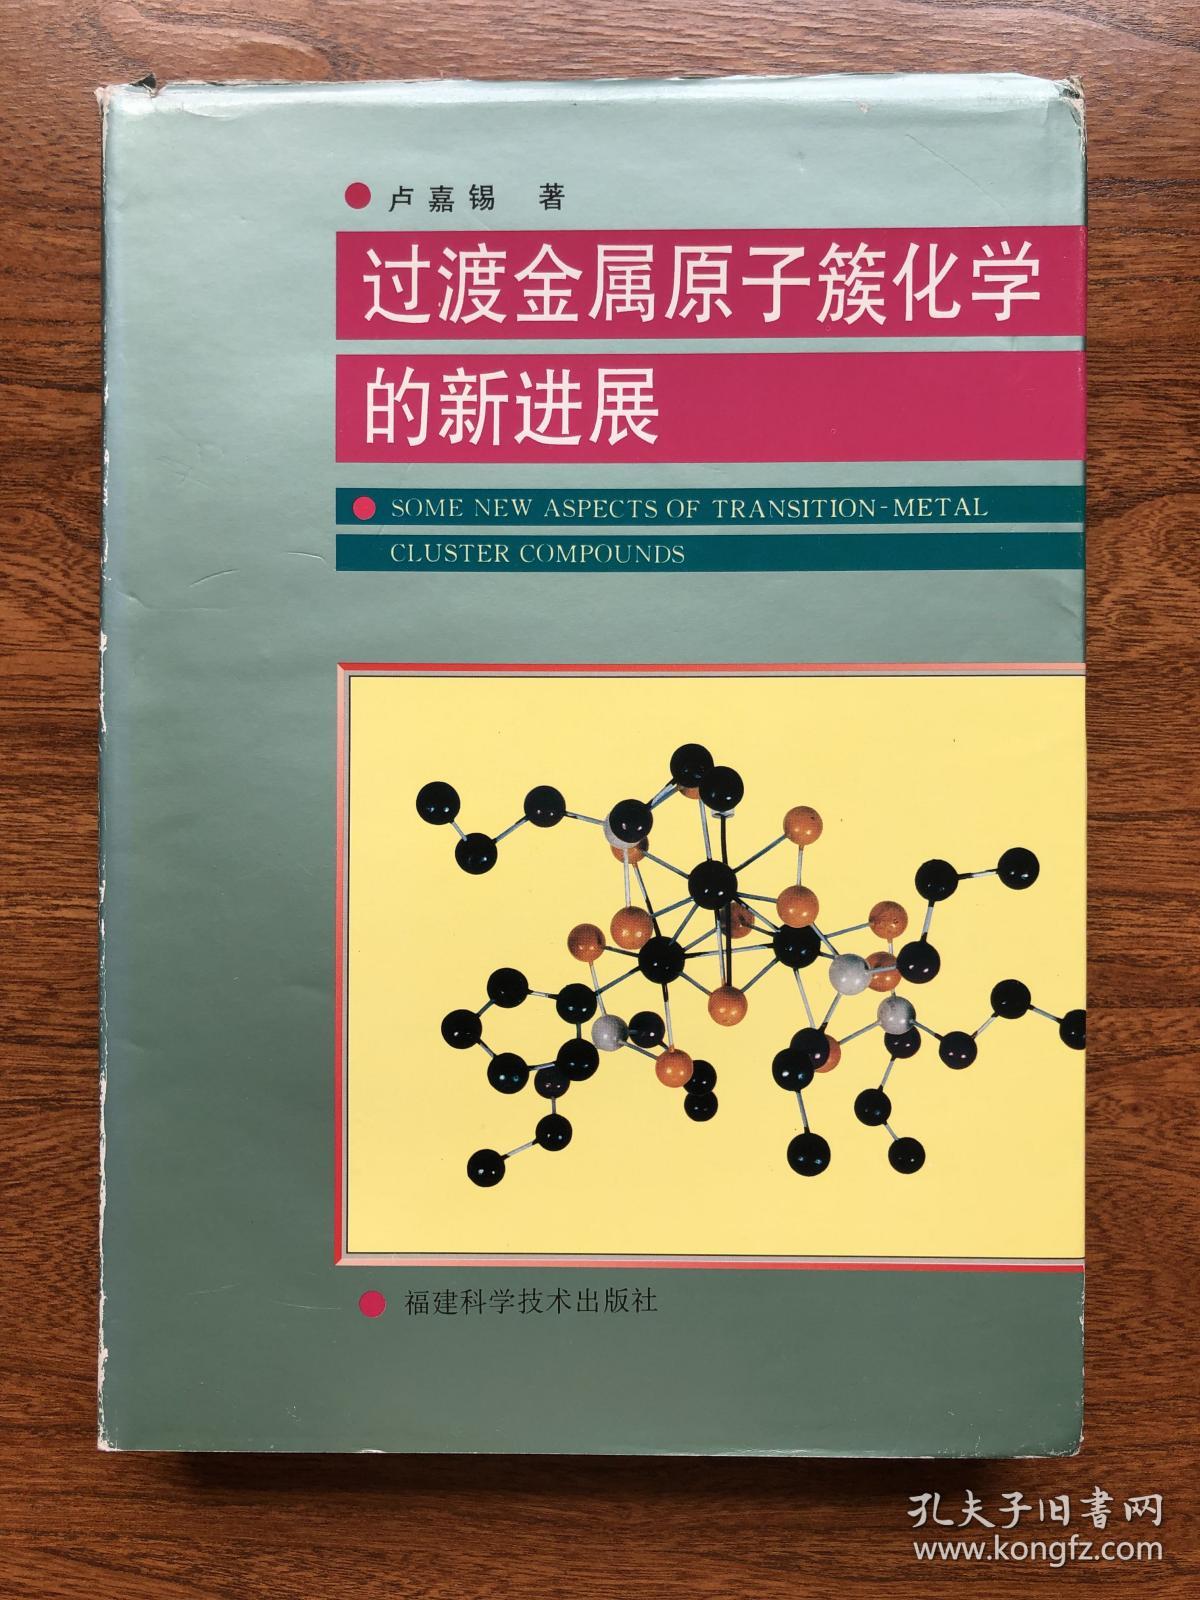 著名物理化学家、教育家、社会活动家卢嘉锡签名本《过渡金属原子簇化学的新进展》